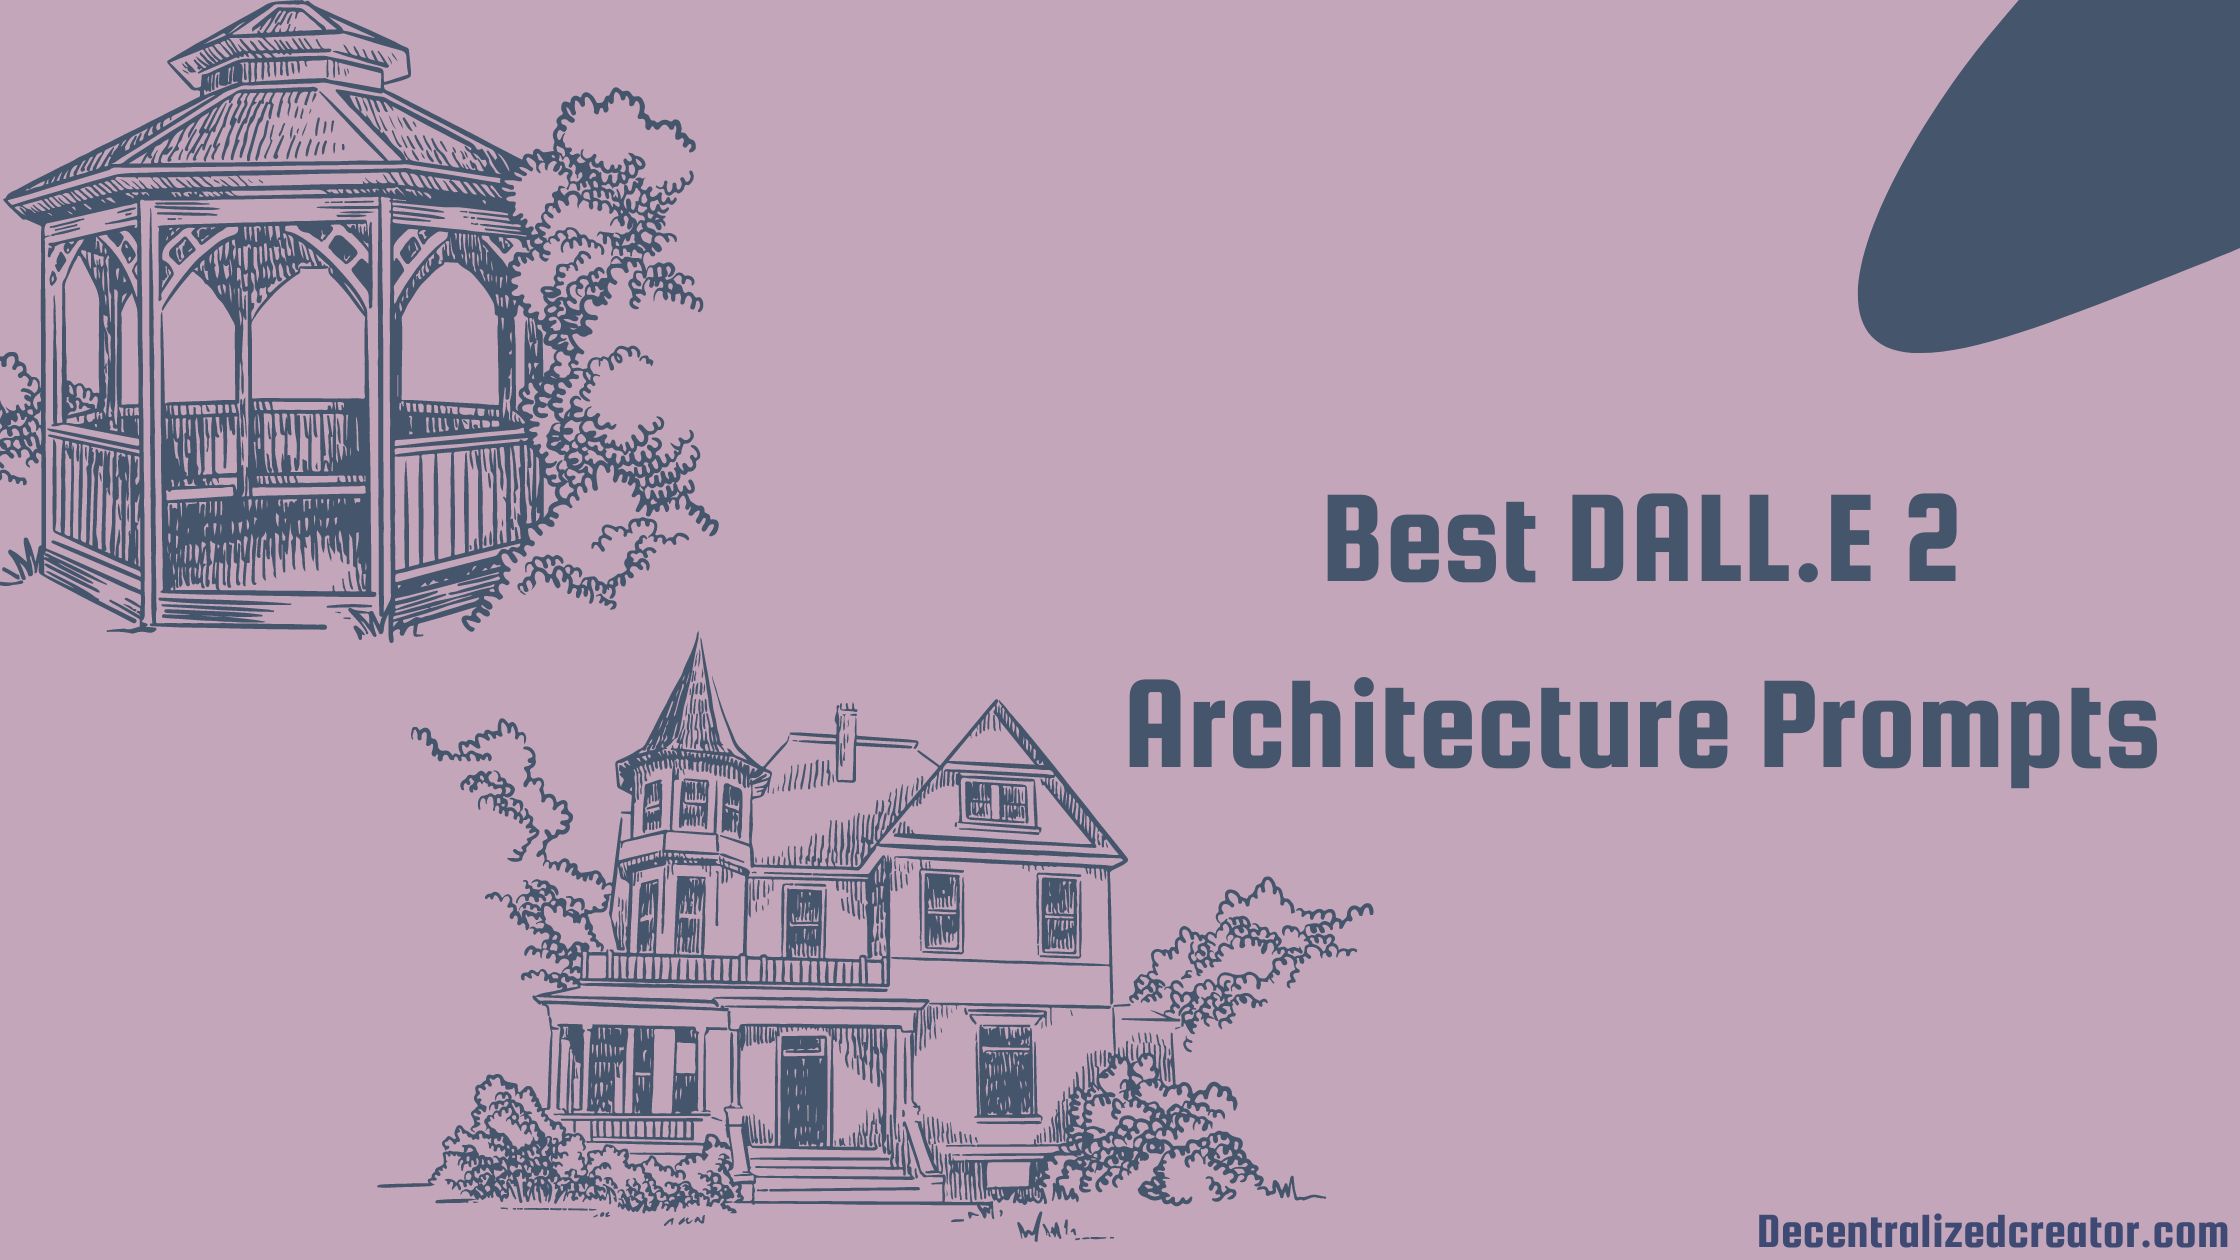 Best DALL.E 2 Architecture Prompts